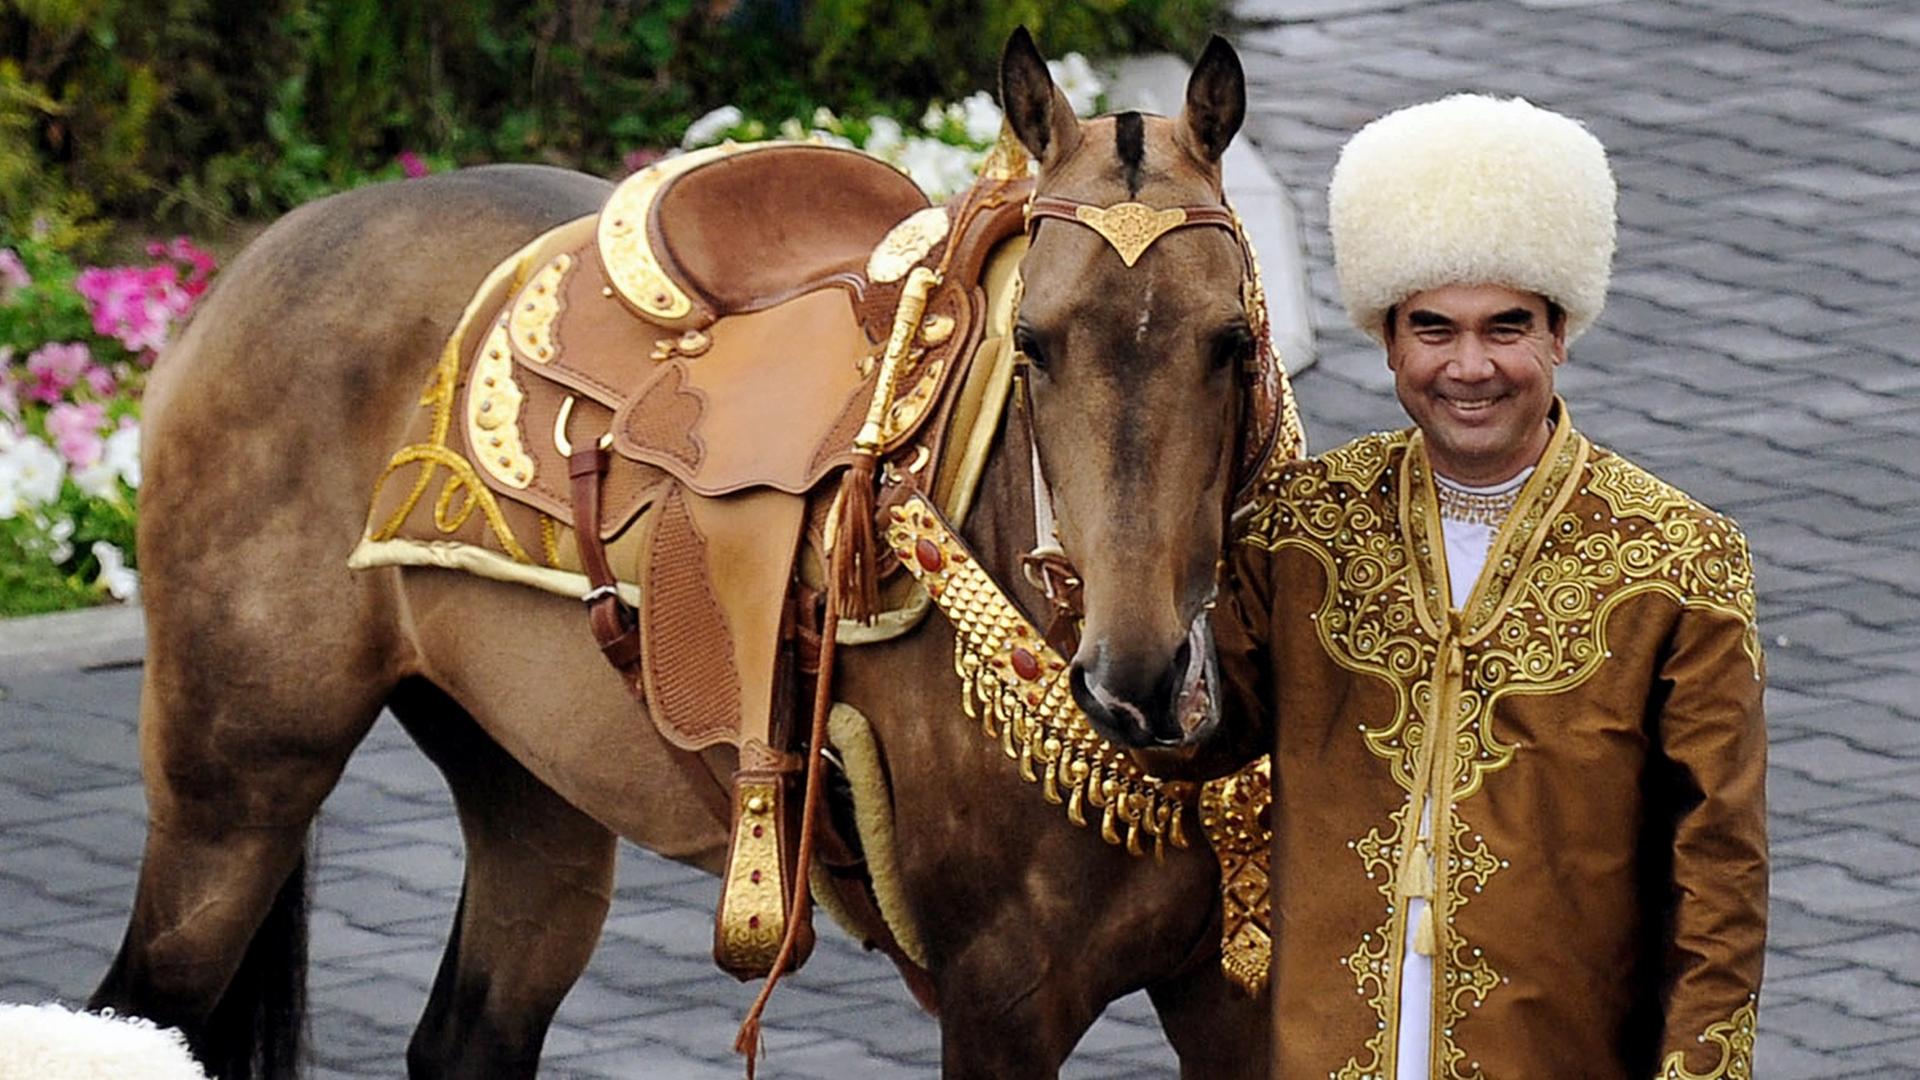 Der turkmenische Präsident Gurbanguly Berdimuhamedov posiert mit der dreijährigen Akhal-Teke-Stute Berghkan, Siegerin des jährlich stattfindenden Internationalen Pferde-Schönheitswettbewerbs in Ashgabat. ((Turkmen President Gurbanguly Berdimuhamedov poses with an ancient Akhal-Teke breed three years old studhorse, Begkhan, that won an Inernational Annual Horse Beauty contest in Ashgabat on April 23, 2016. (Photo by IGOR SASIN / AFP))